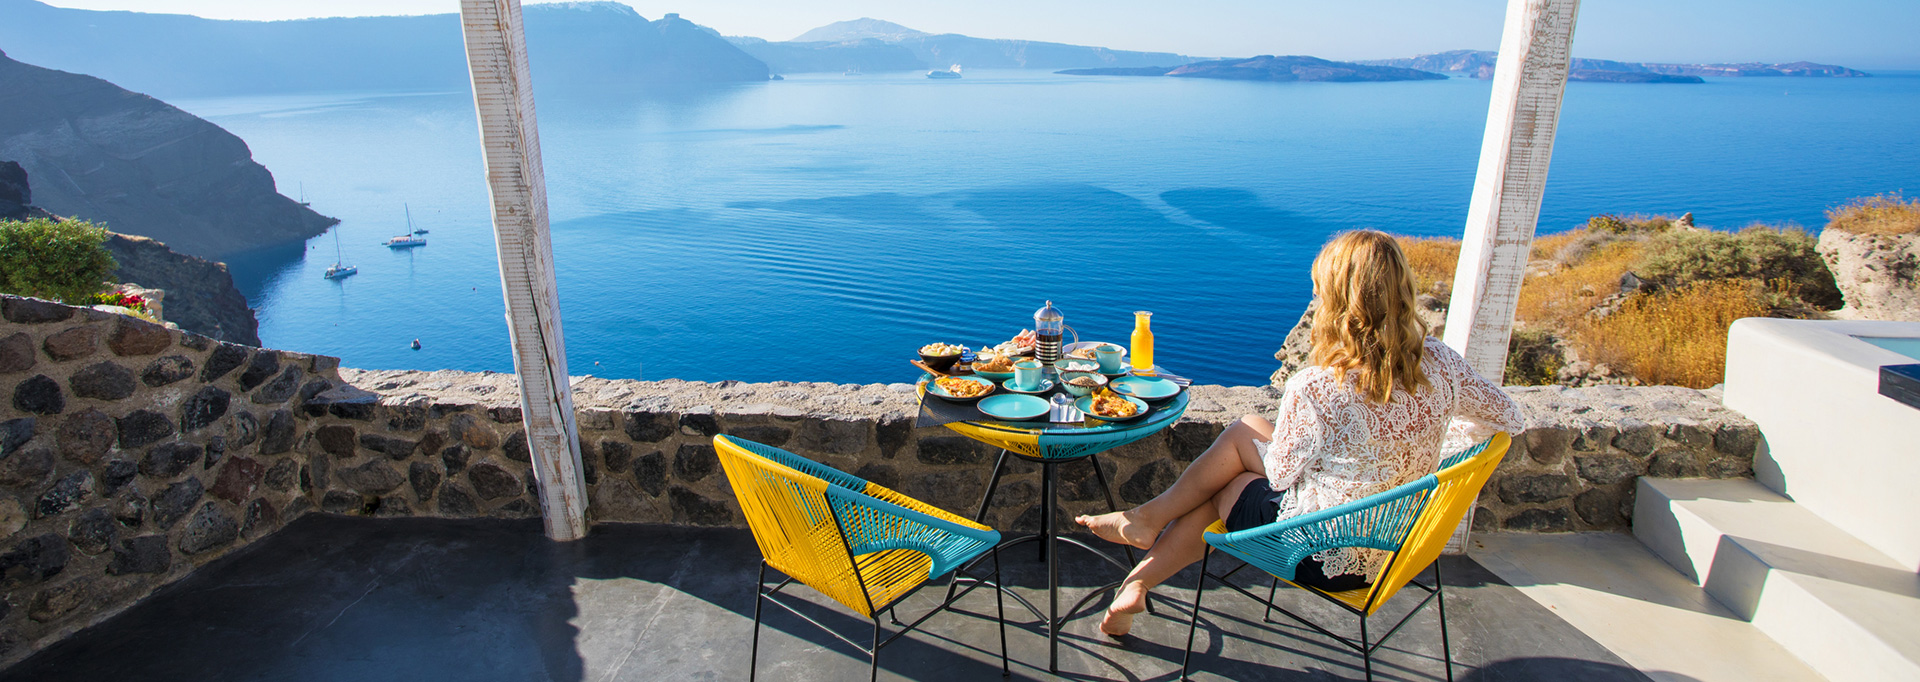 breakfast on vacation in Santorini